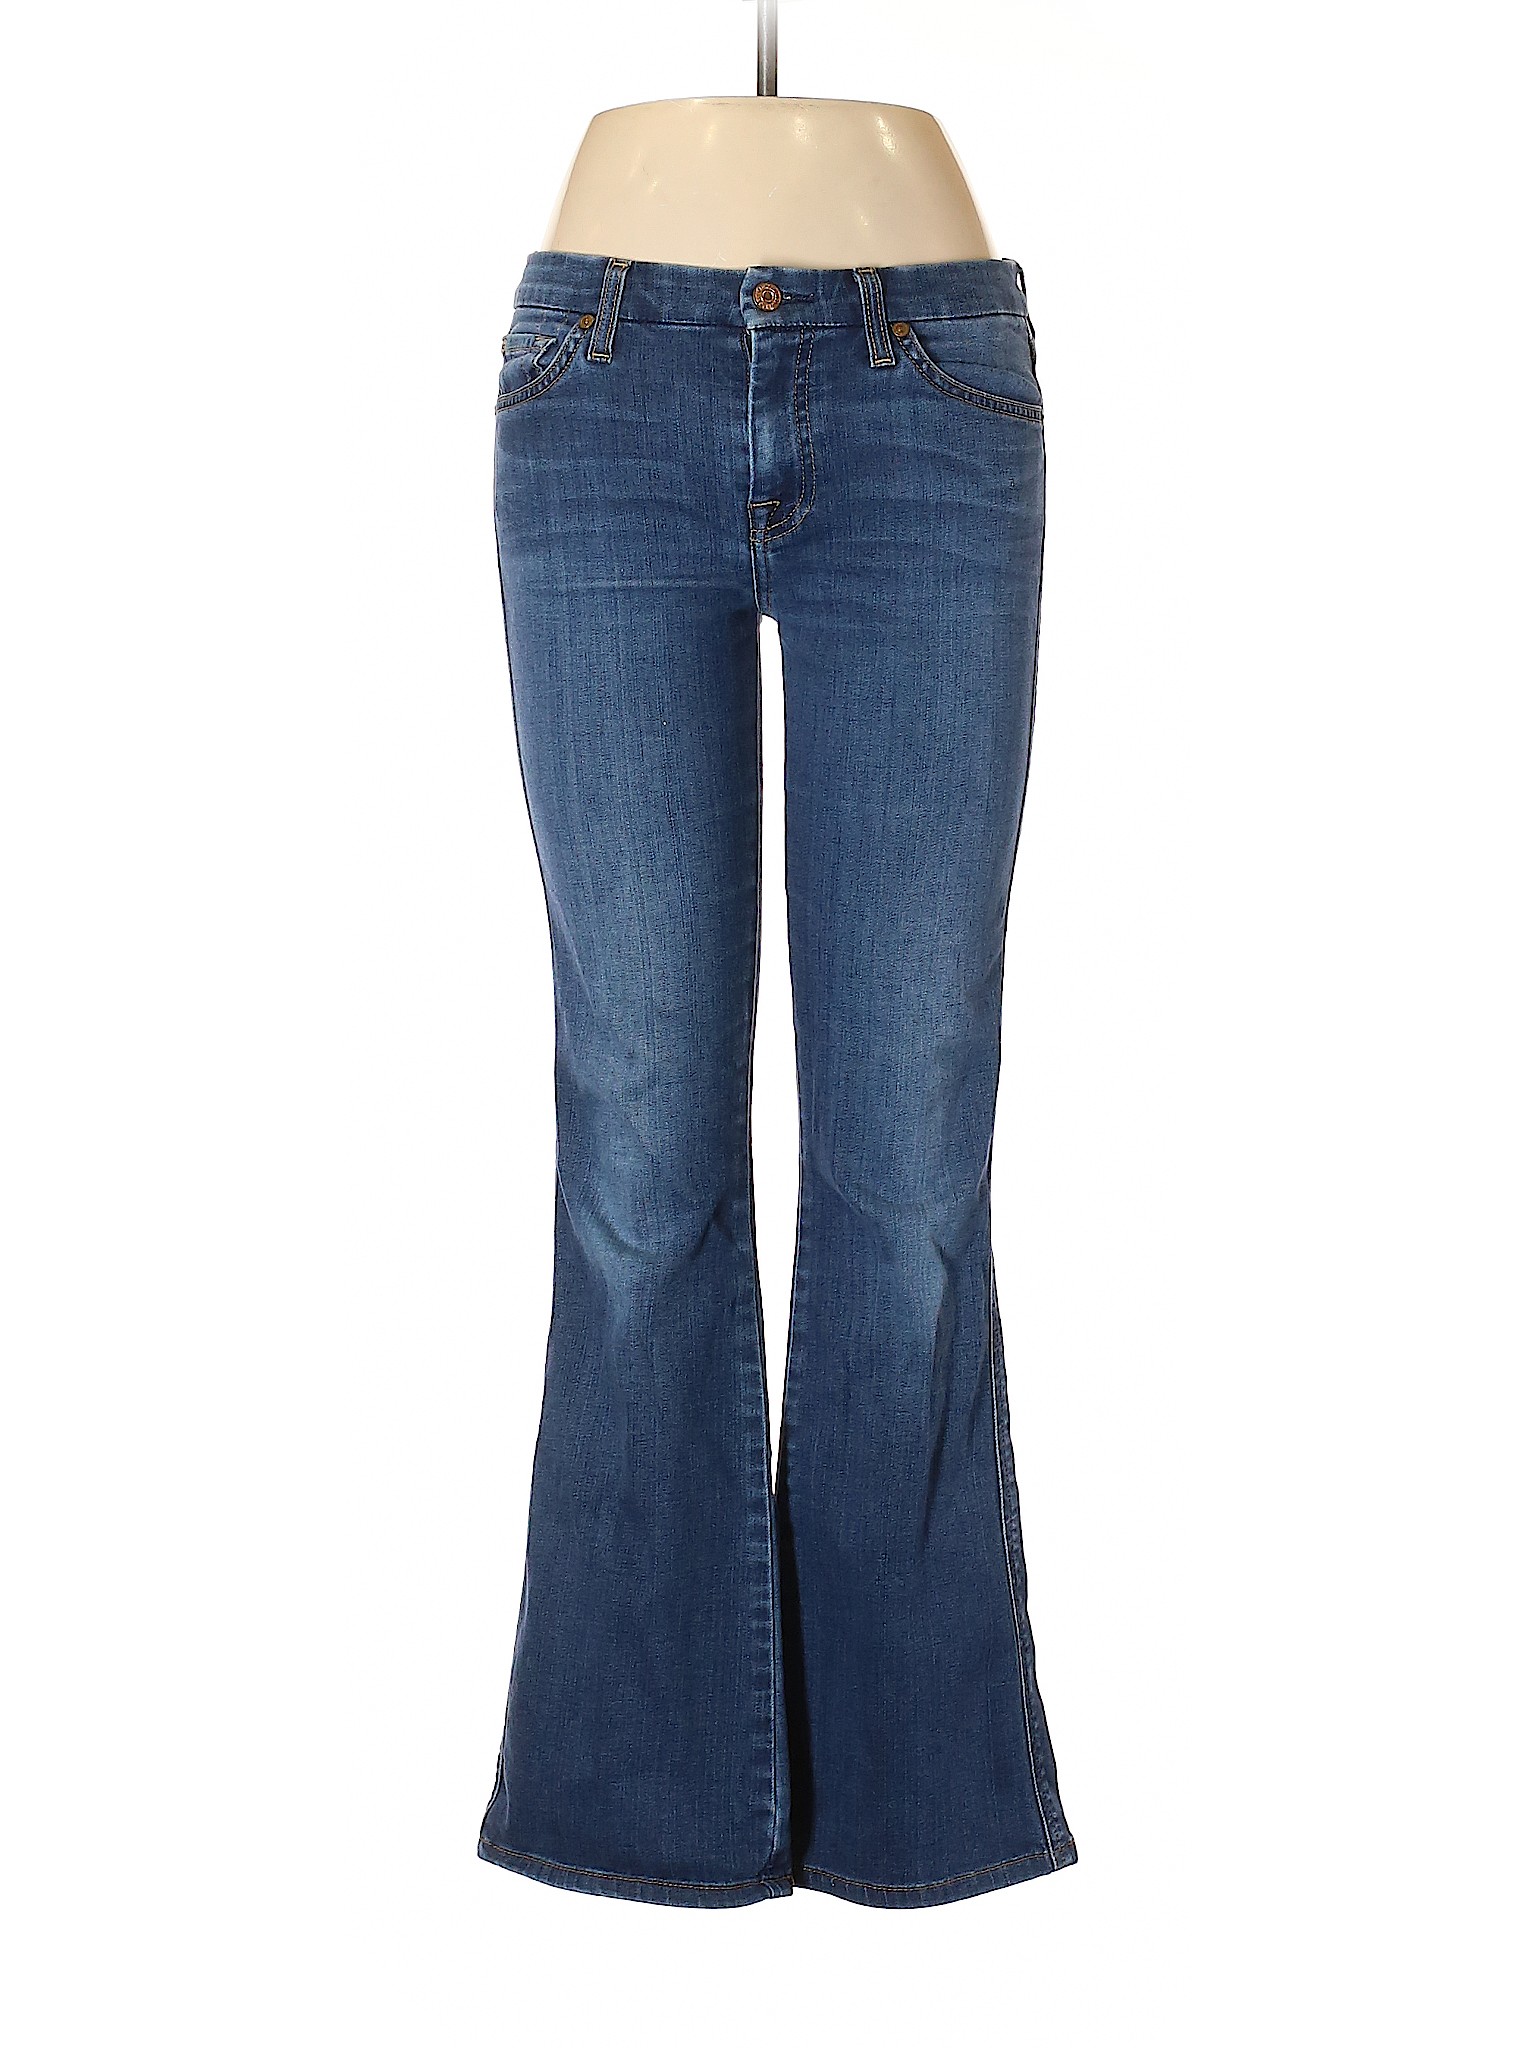 7 For All Mankind Women Blue Jeans 28W | eBay